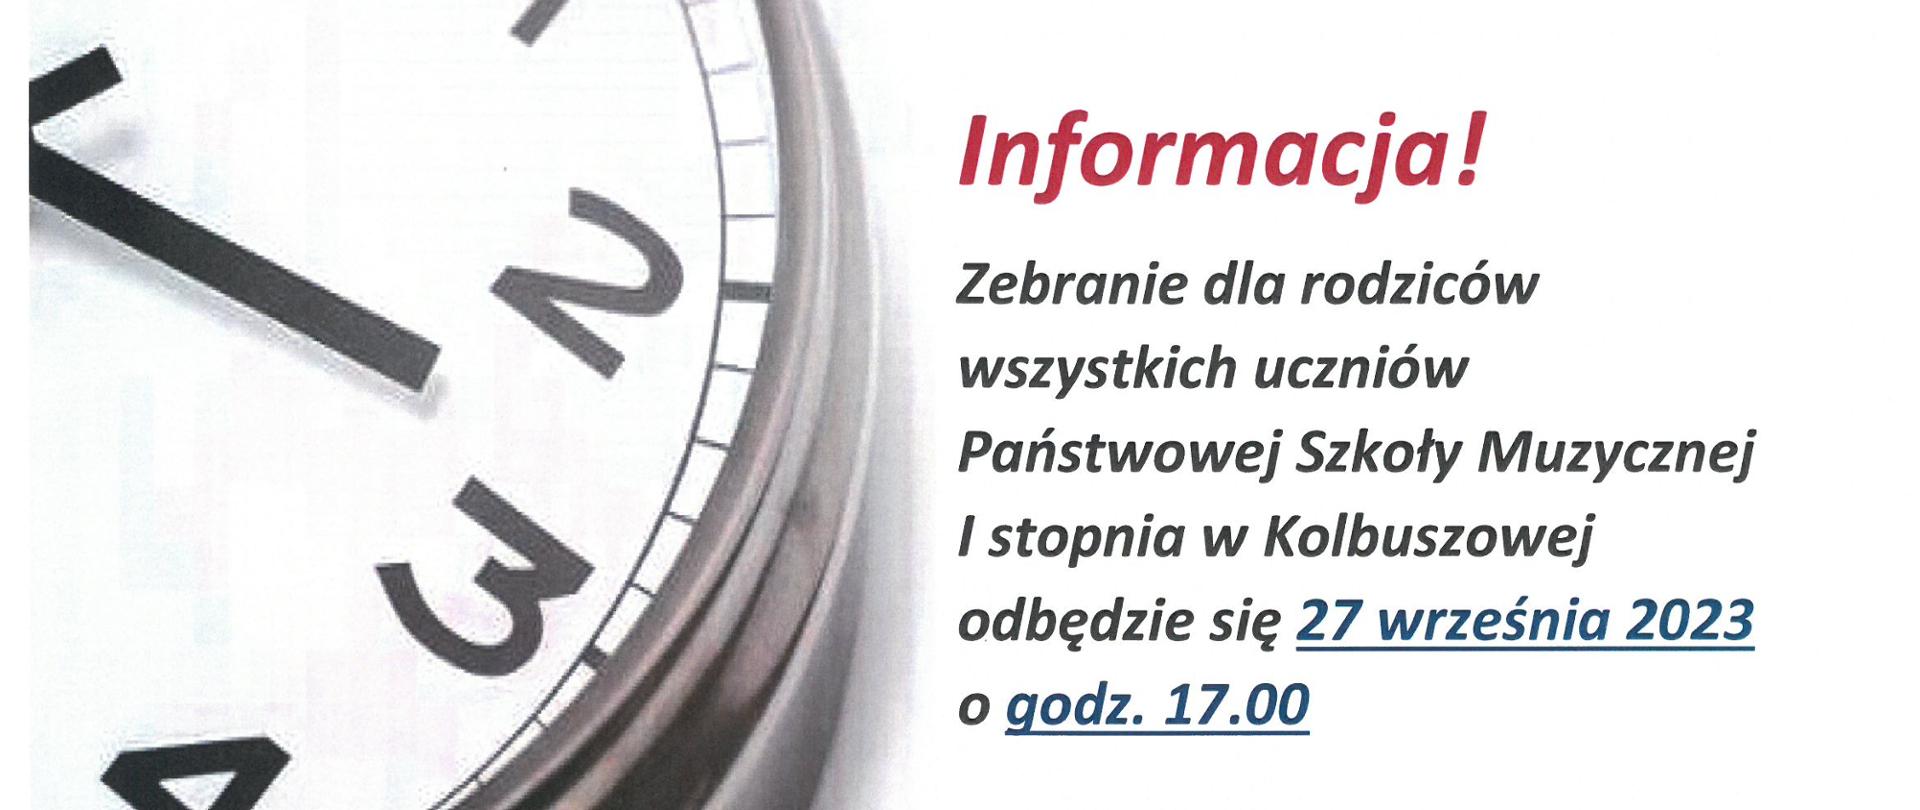 Plakat na białym tle z ikoną zegara po stronie lewej w kolorze czarnym z informacją o zebraniu rodziców koloru czerwonego i czarnego.